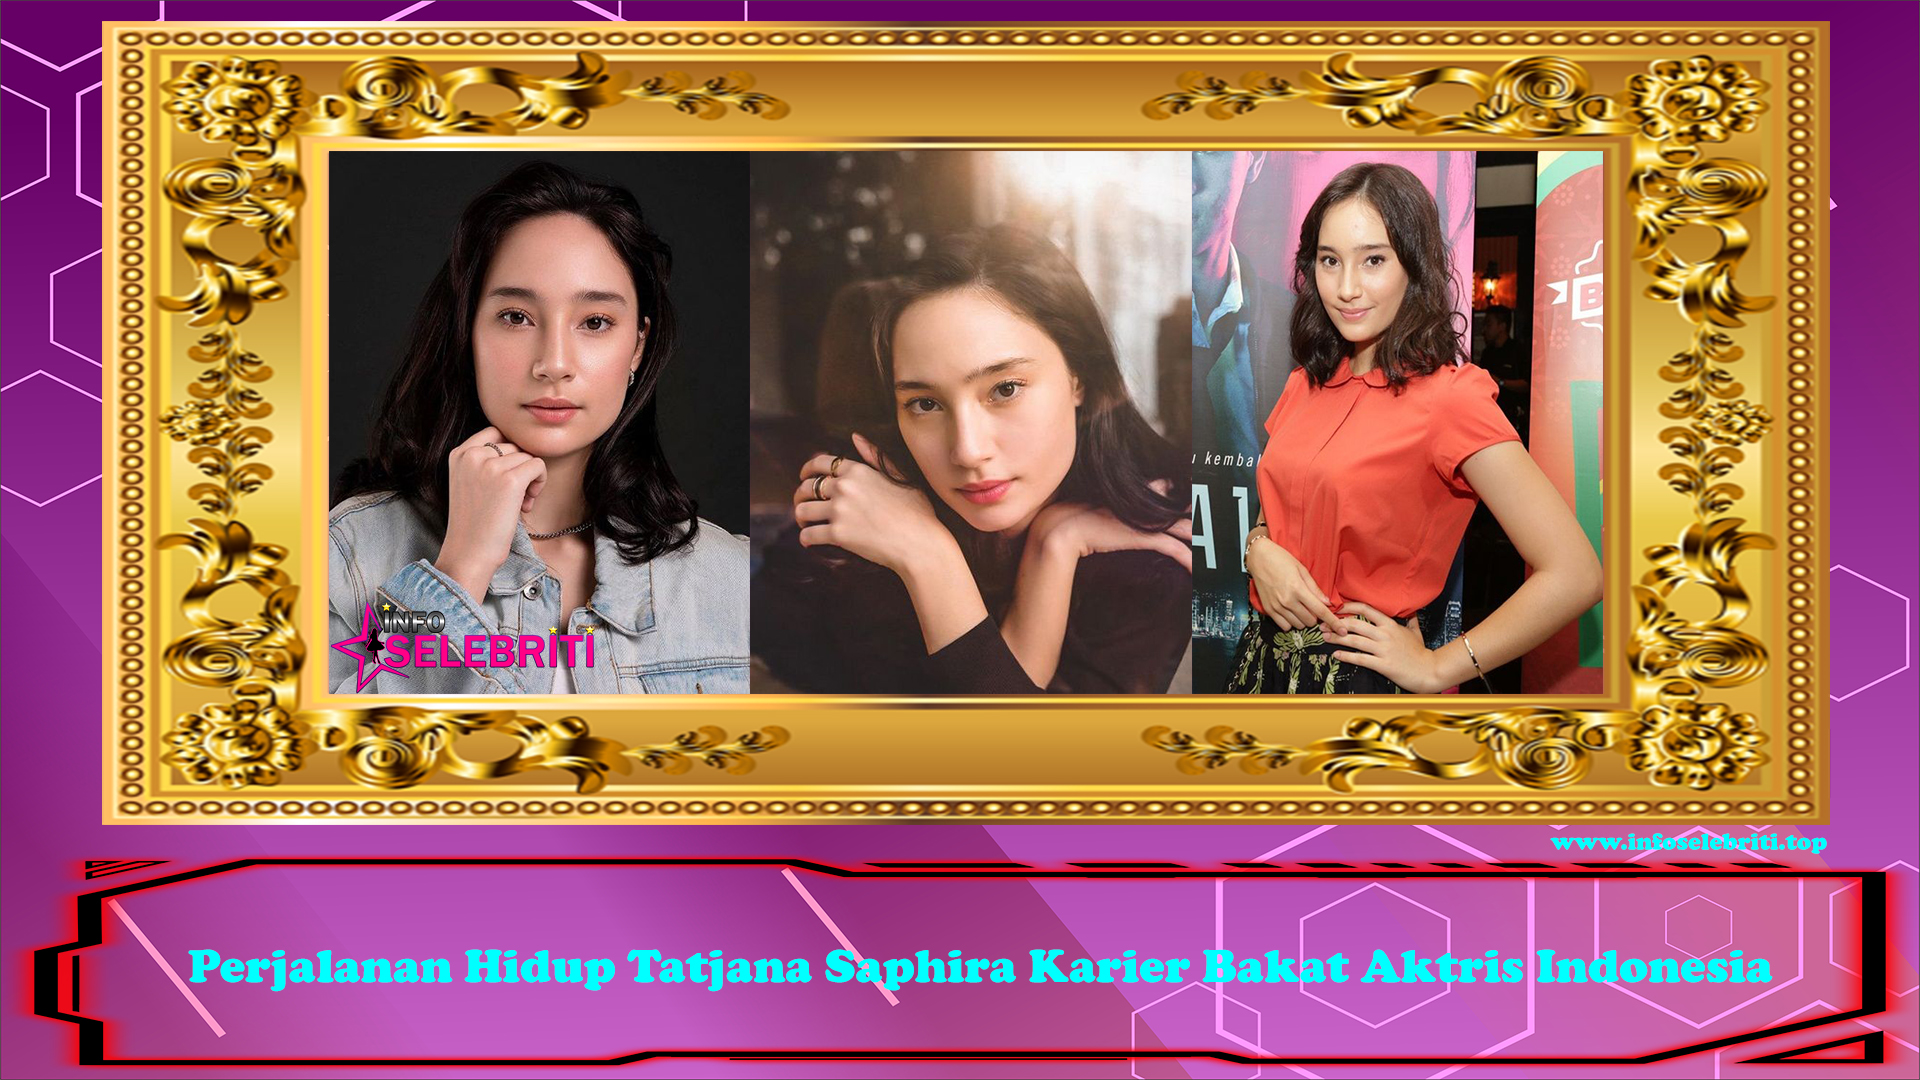 Perjalanan Hidup Tatjana Saphira Karier Bakat Aktris Indonesia